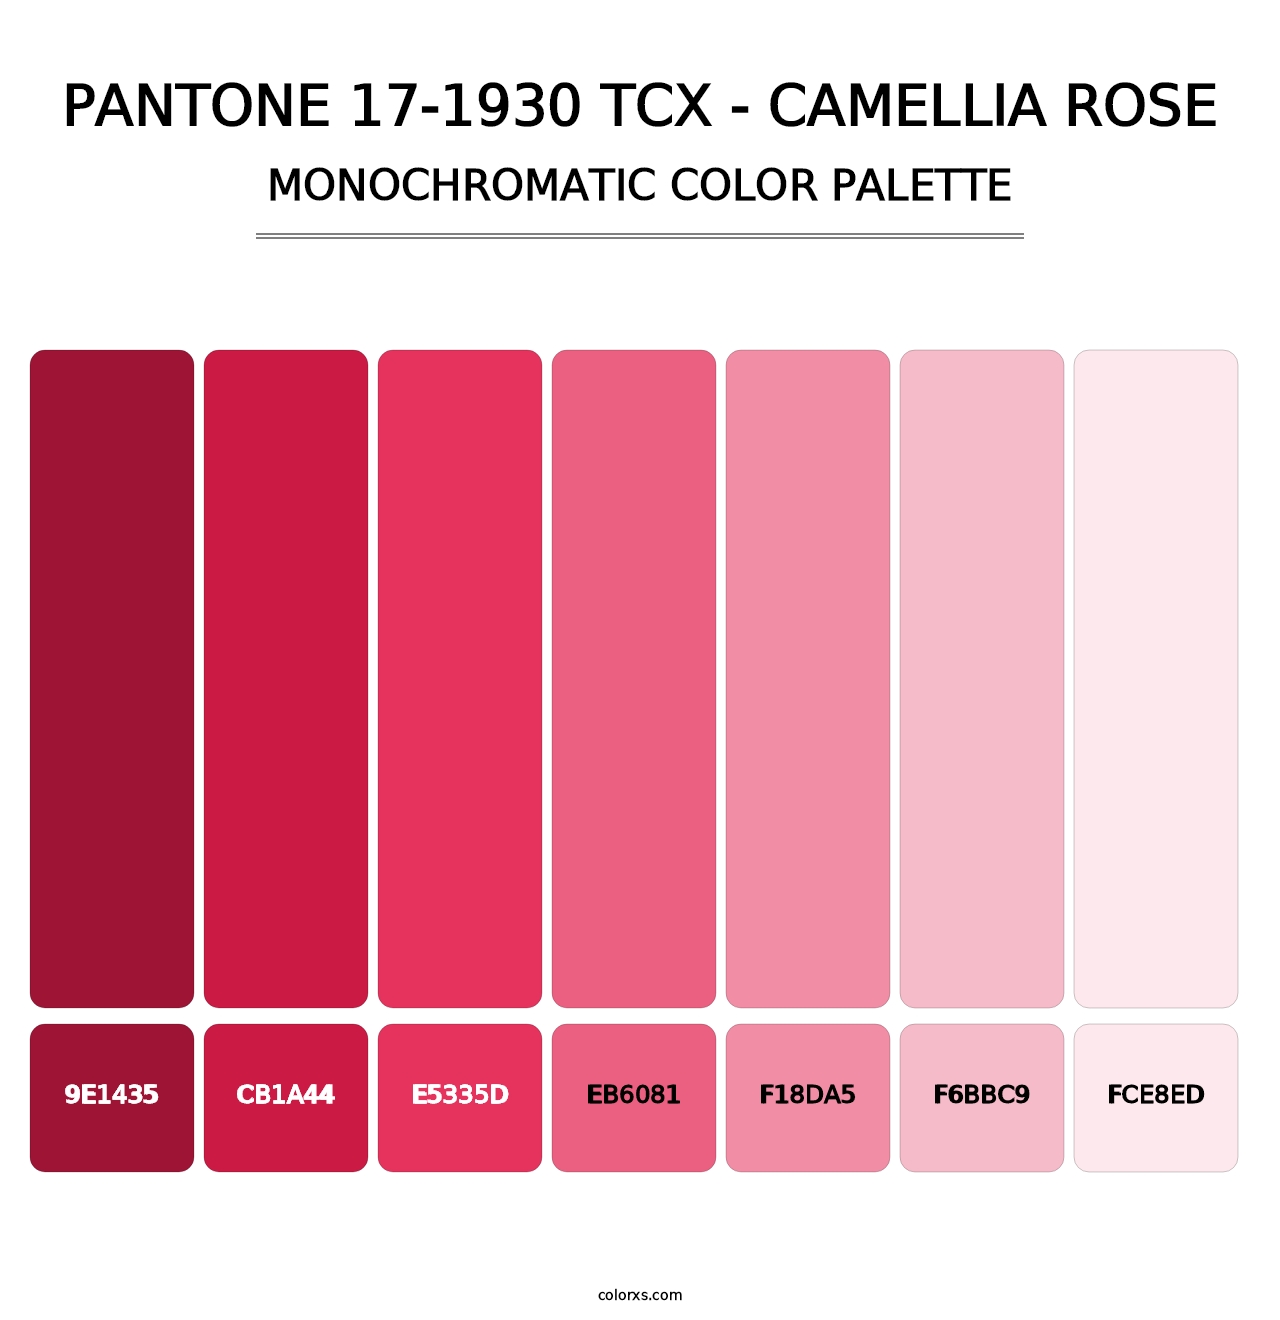 PANTONE 17-1930 TCX - Camellia Rose - Monochromatic Color Palette